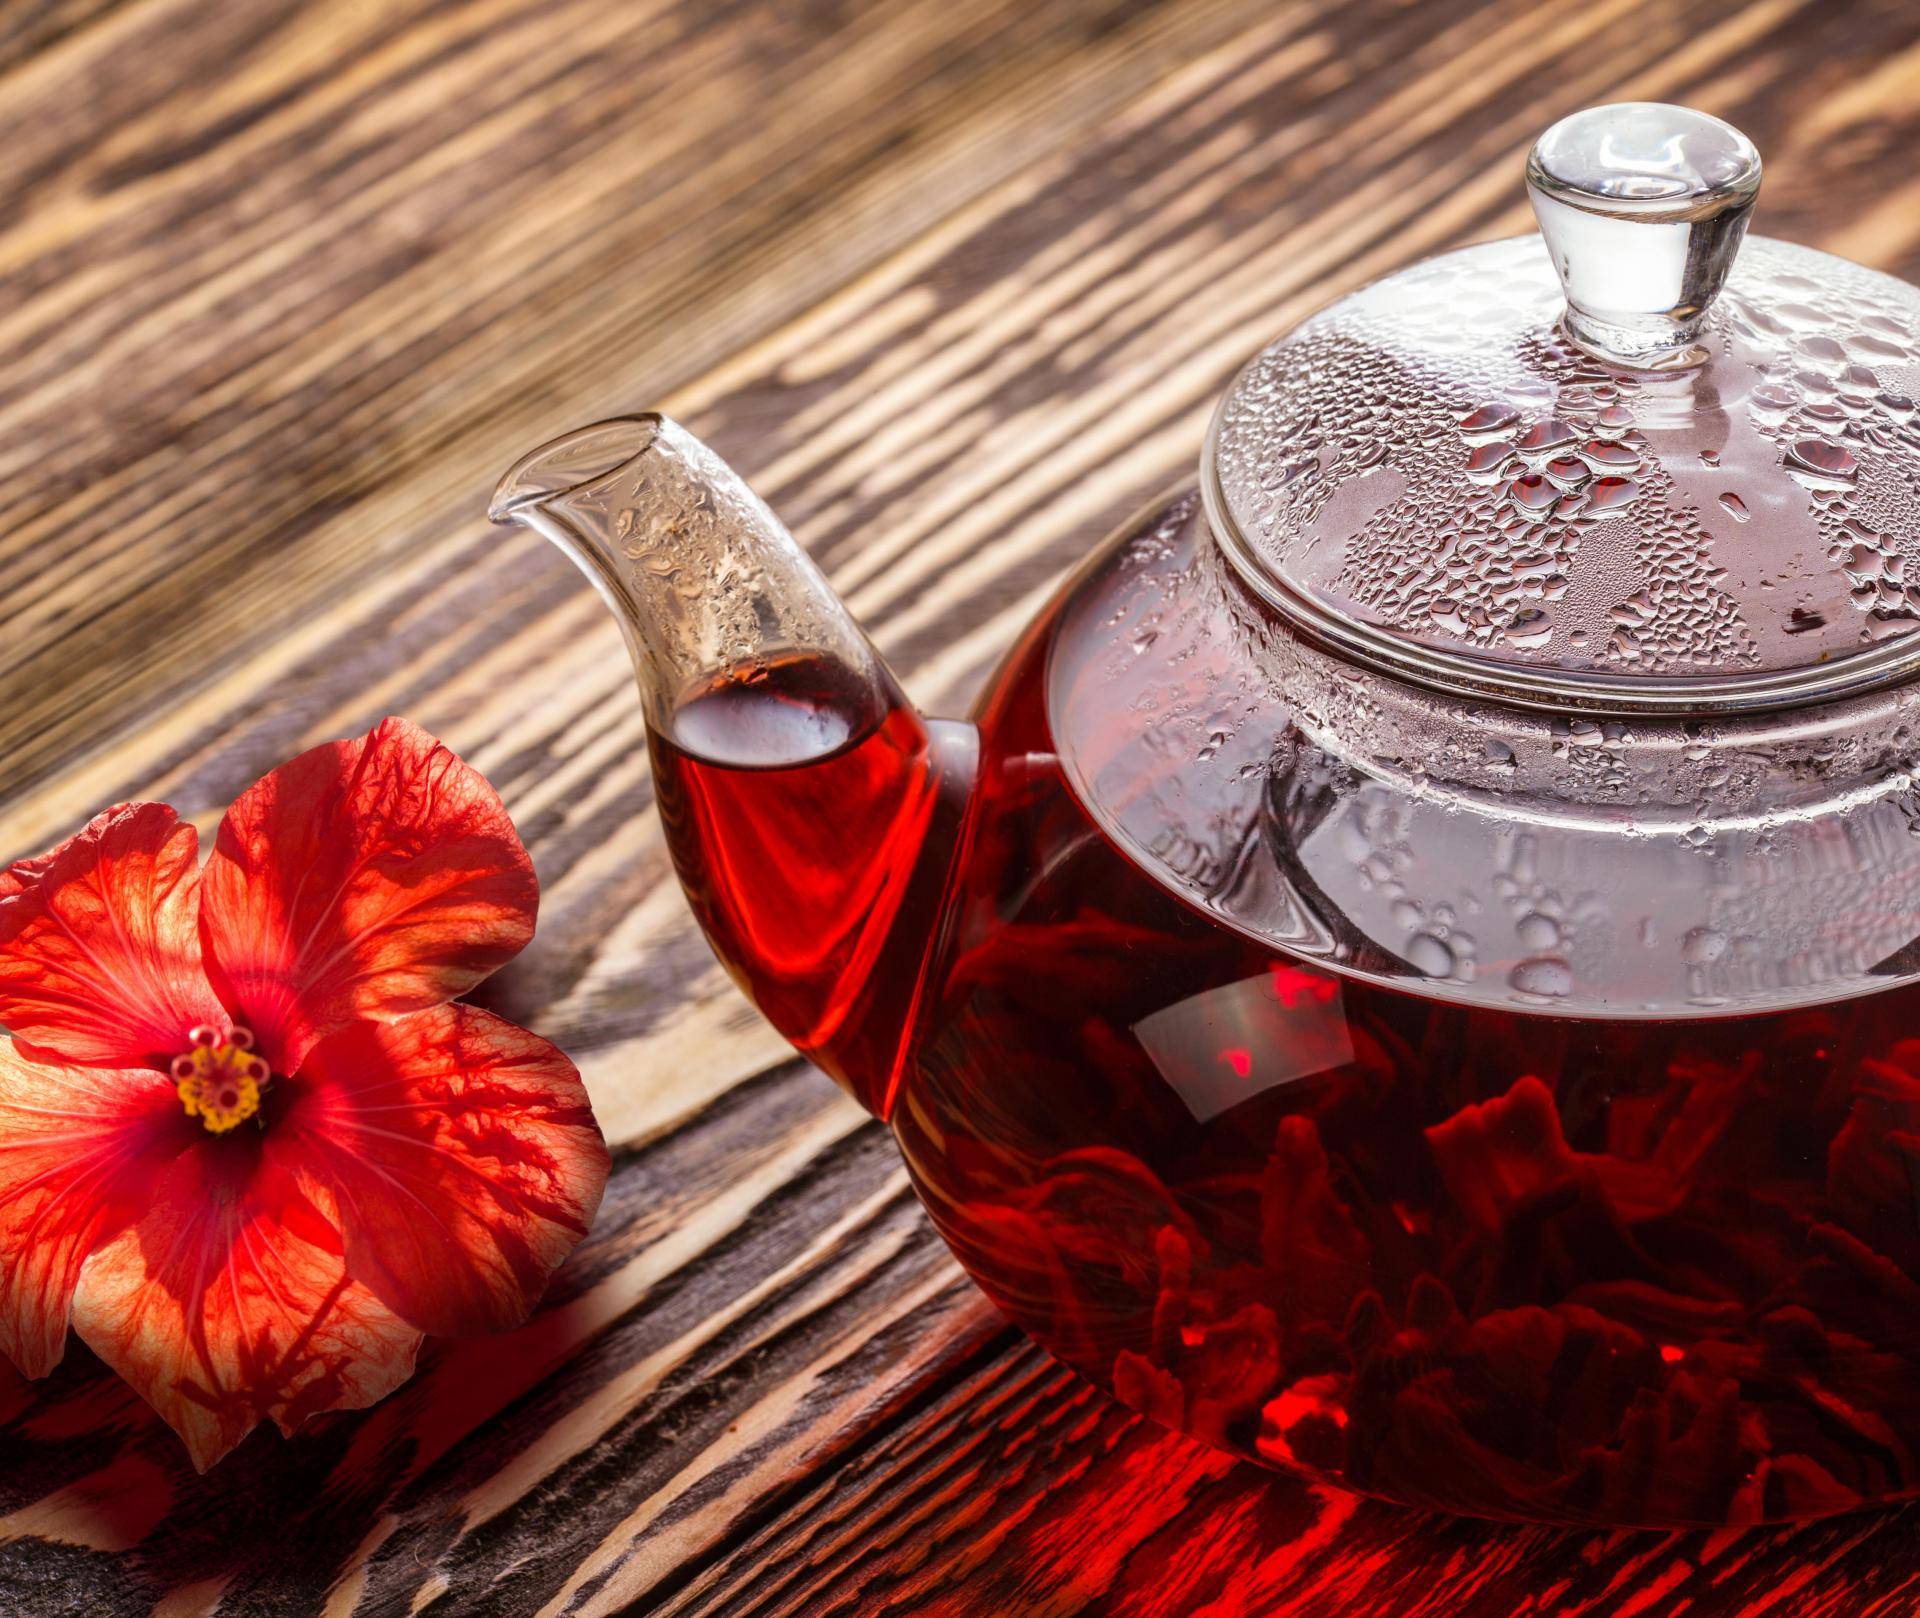 Чай каркаде повышает или понижает давление? — ответ врачей и диетологов